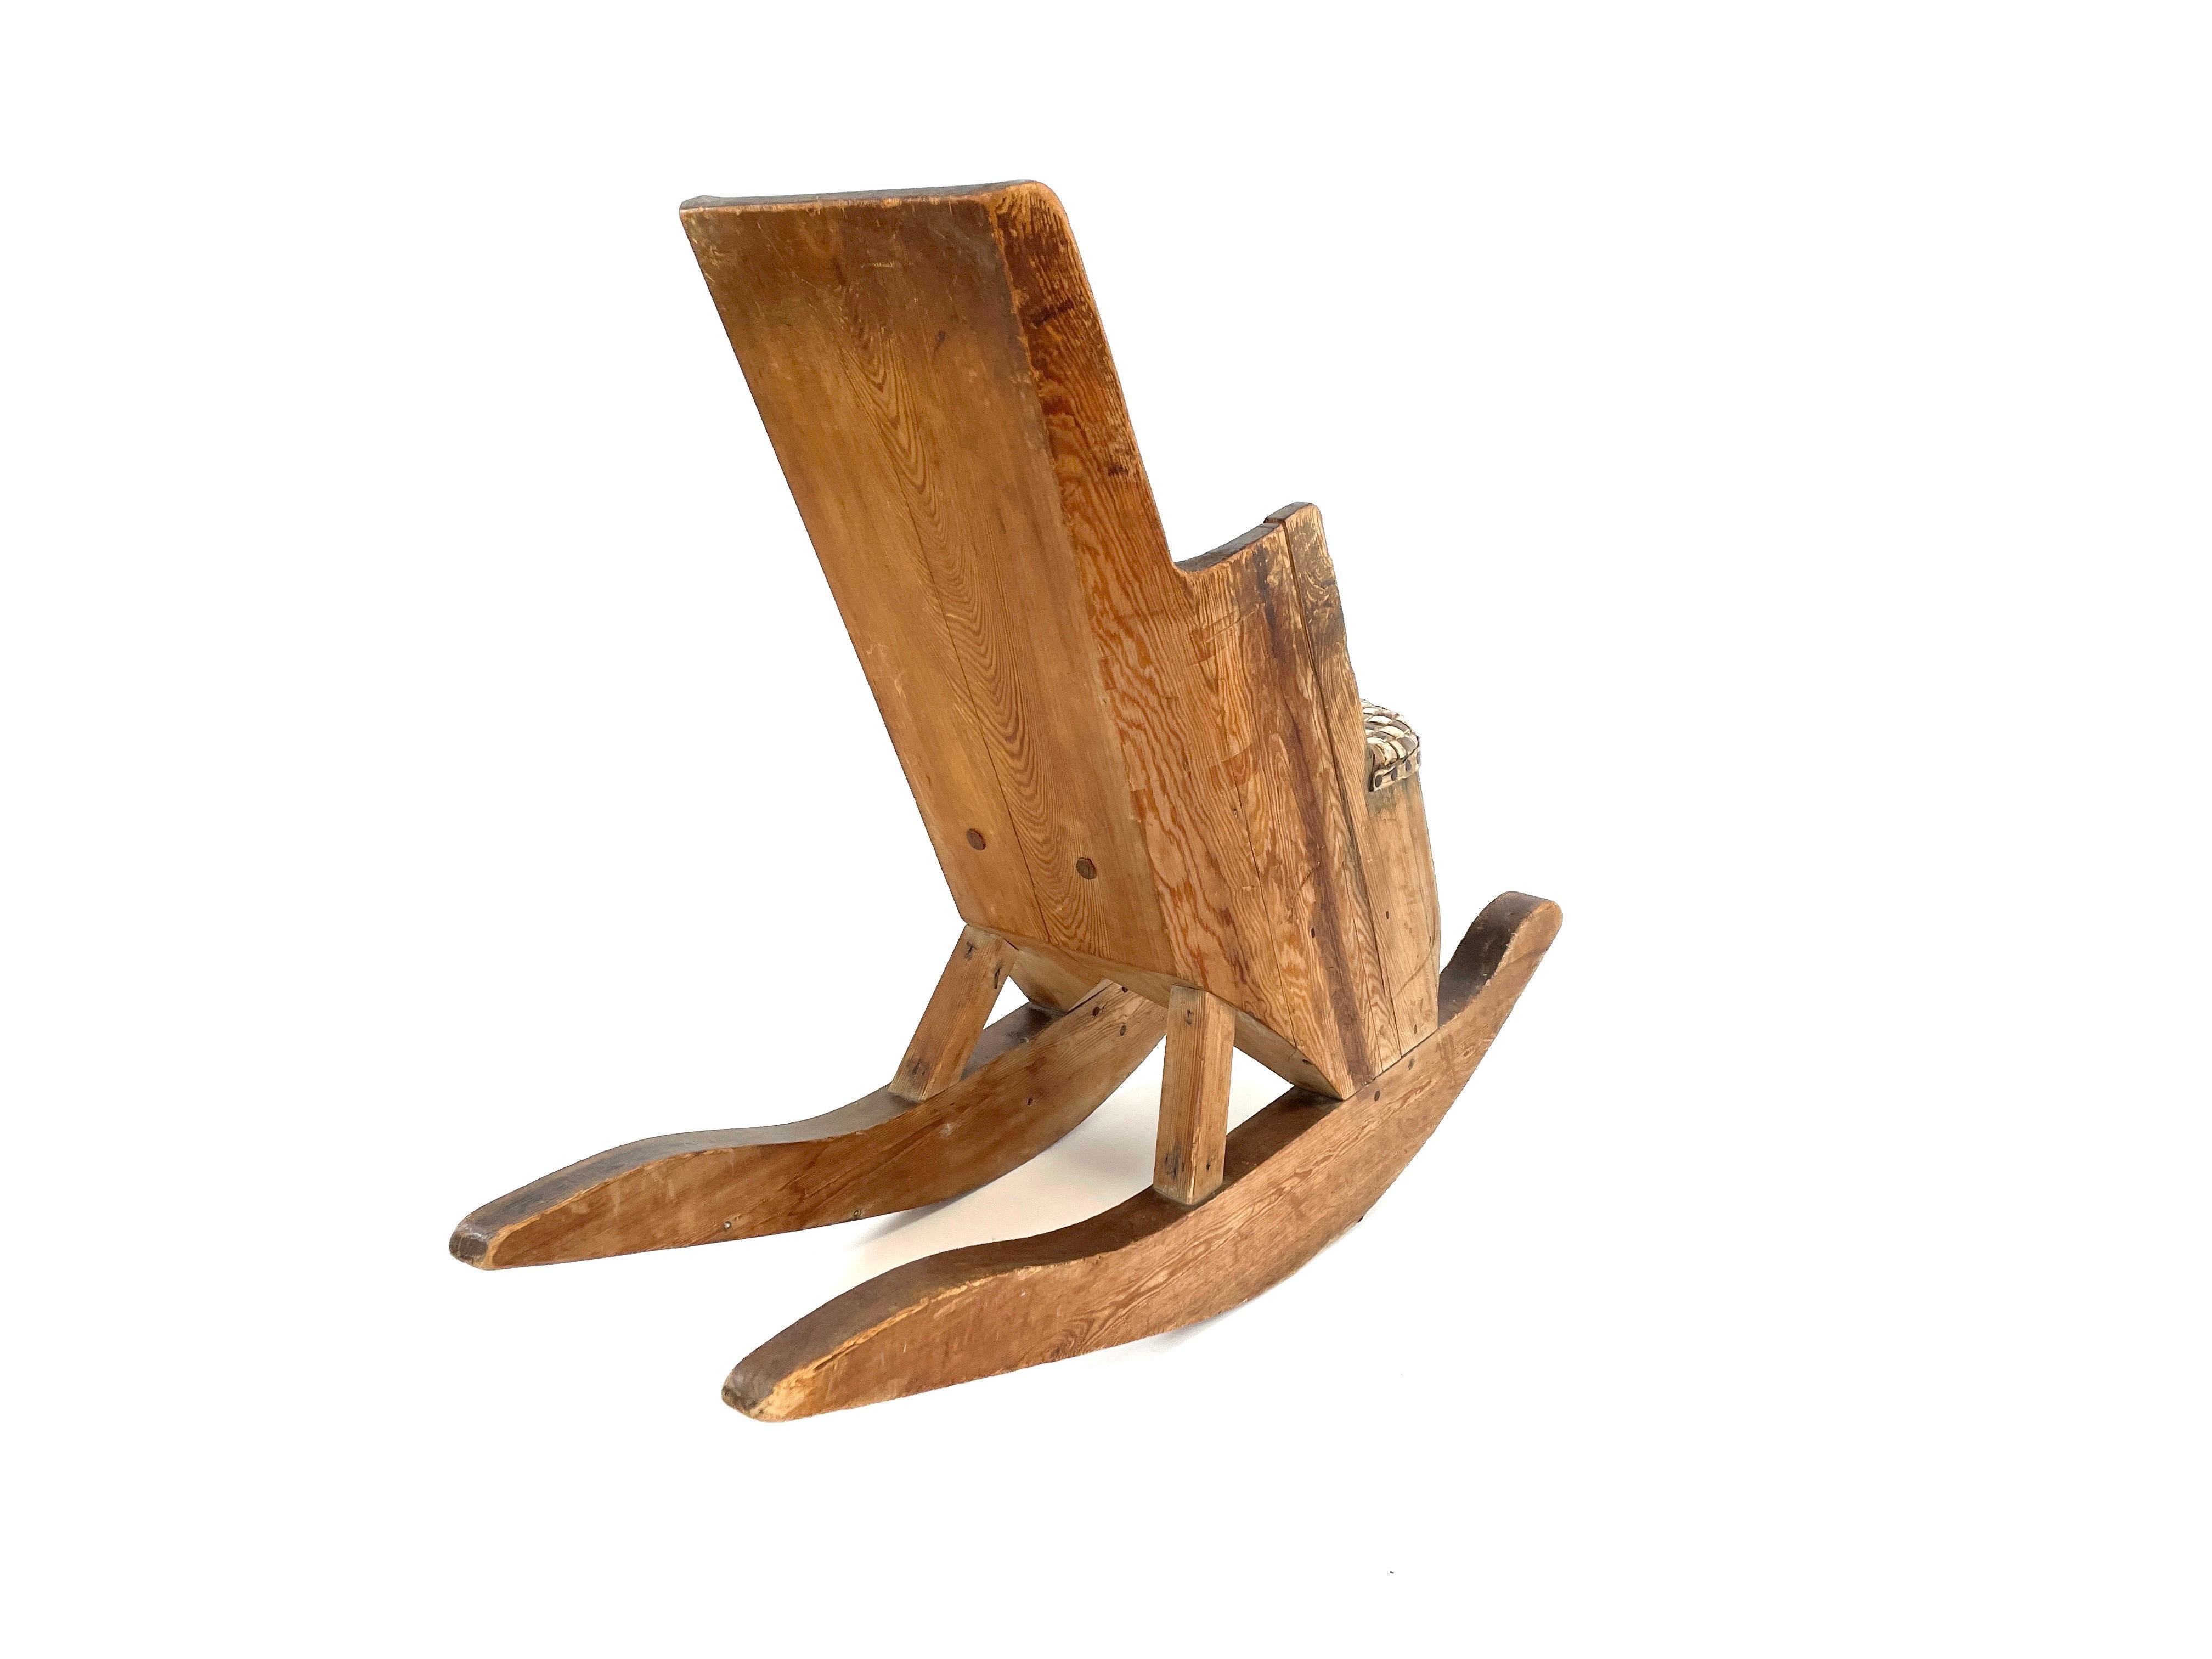 Remontez le temps avec notre charmante chaise à bascule pour enfants, fabriquée à la main au début des années 1900 par un artisan finlandais au talent méconnu. Cette pièce unique présente un design Arts & Crafts, avec un siège en écorce de bouleau.